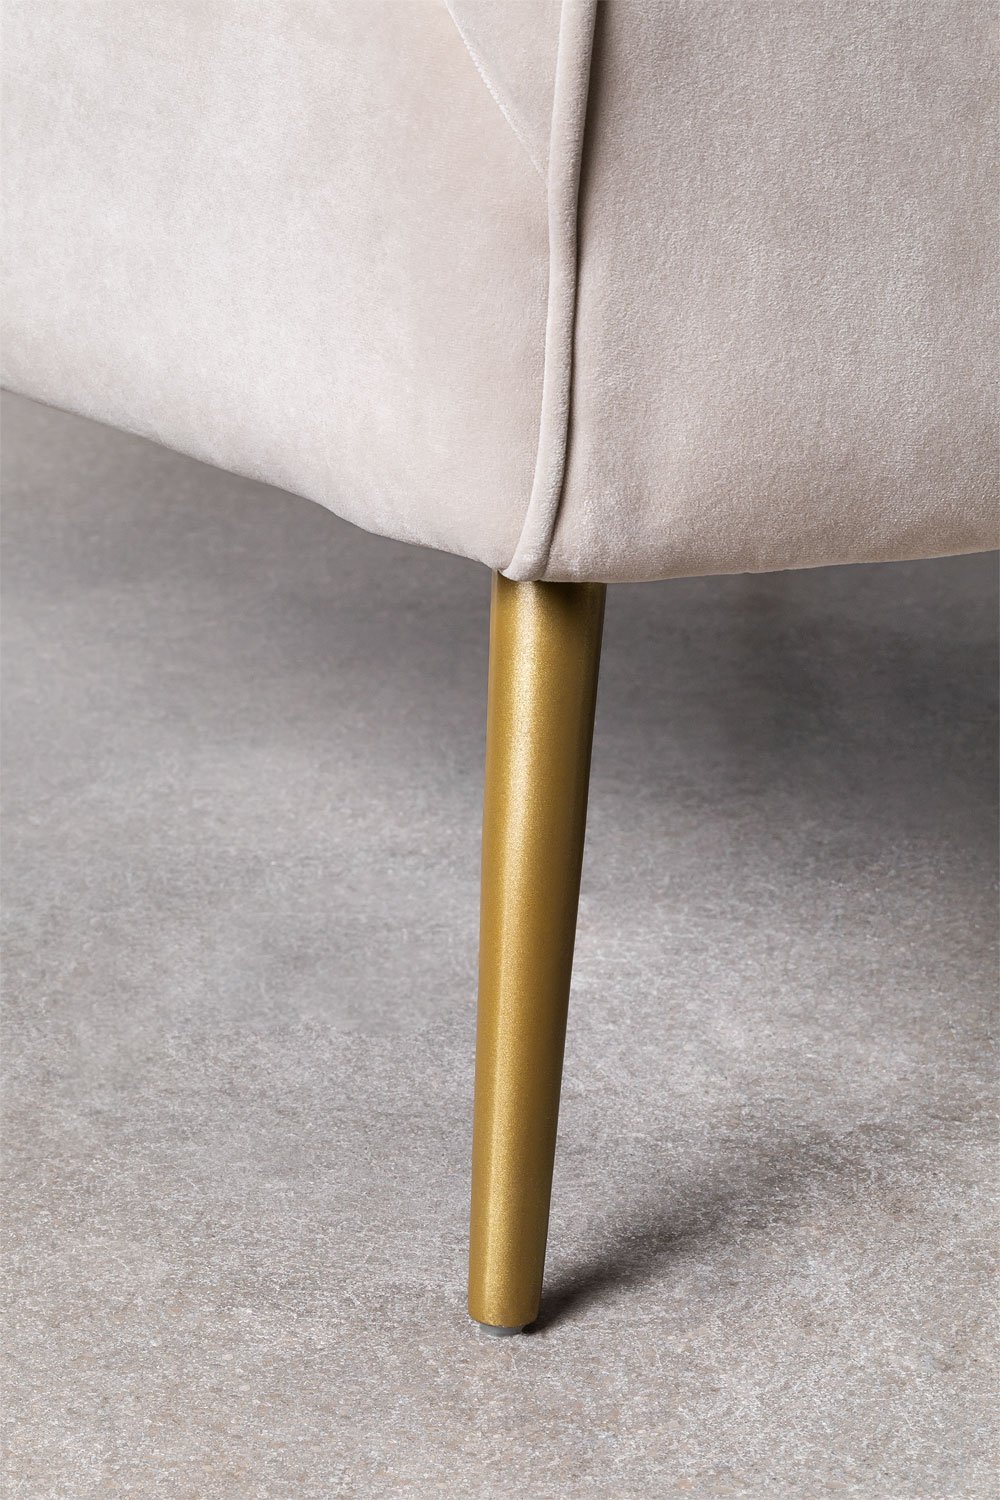 We Home - Poltrona design in velluto marrone e gambe oro